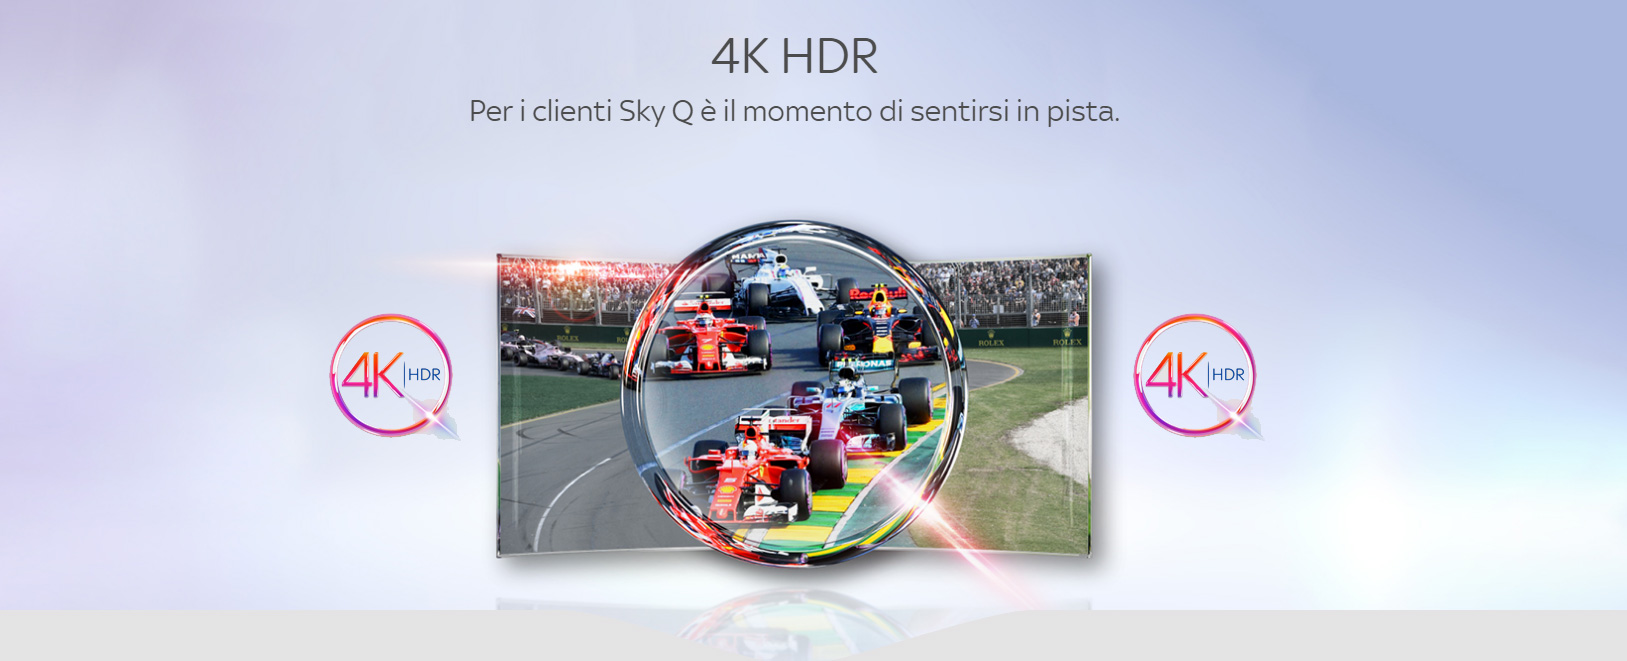 Sky Q: trasmissioni in 4k HDR al via